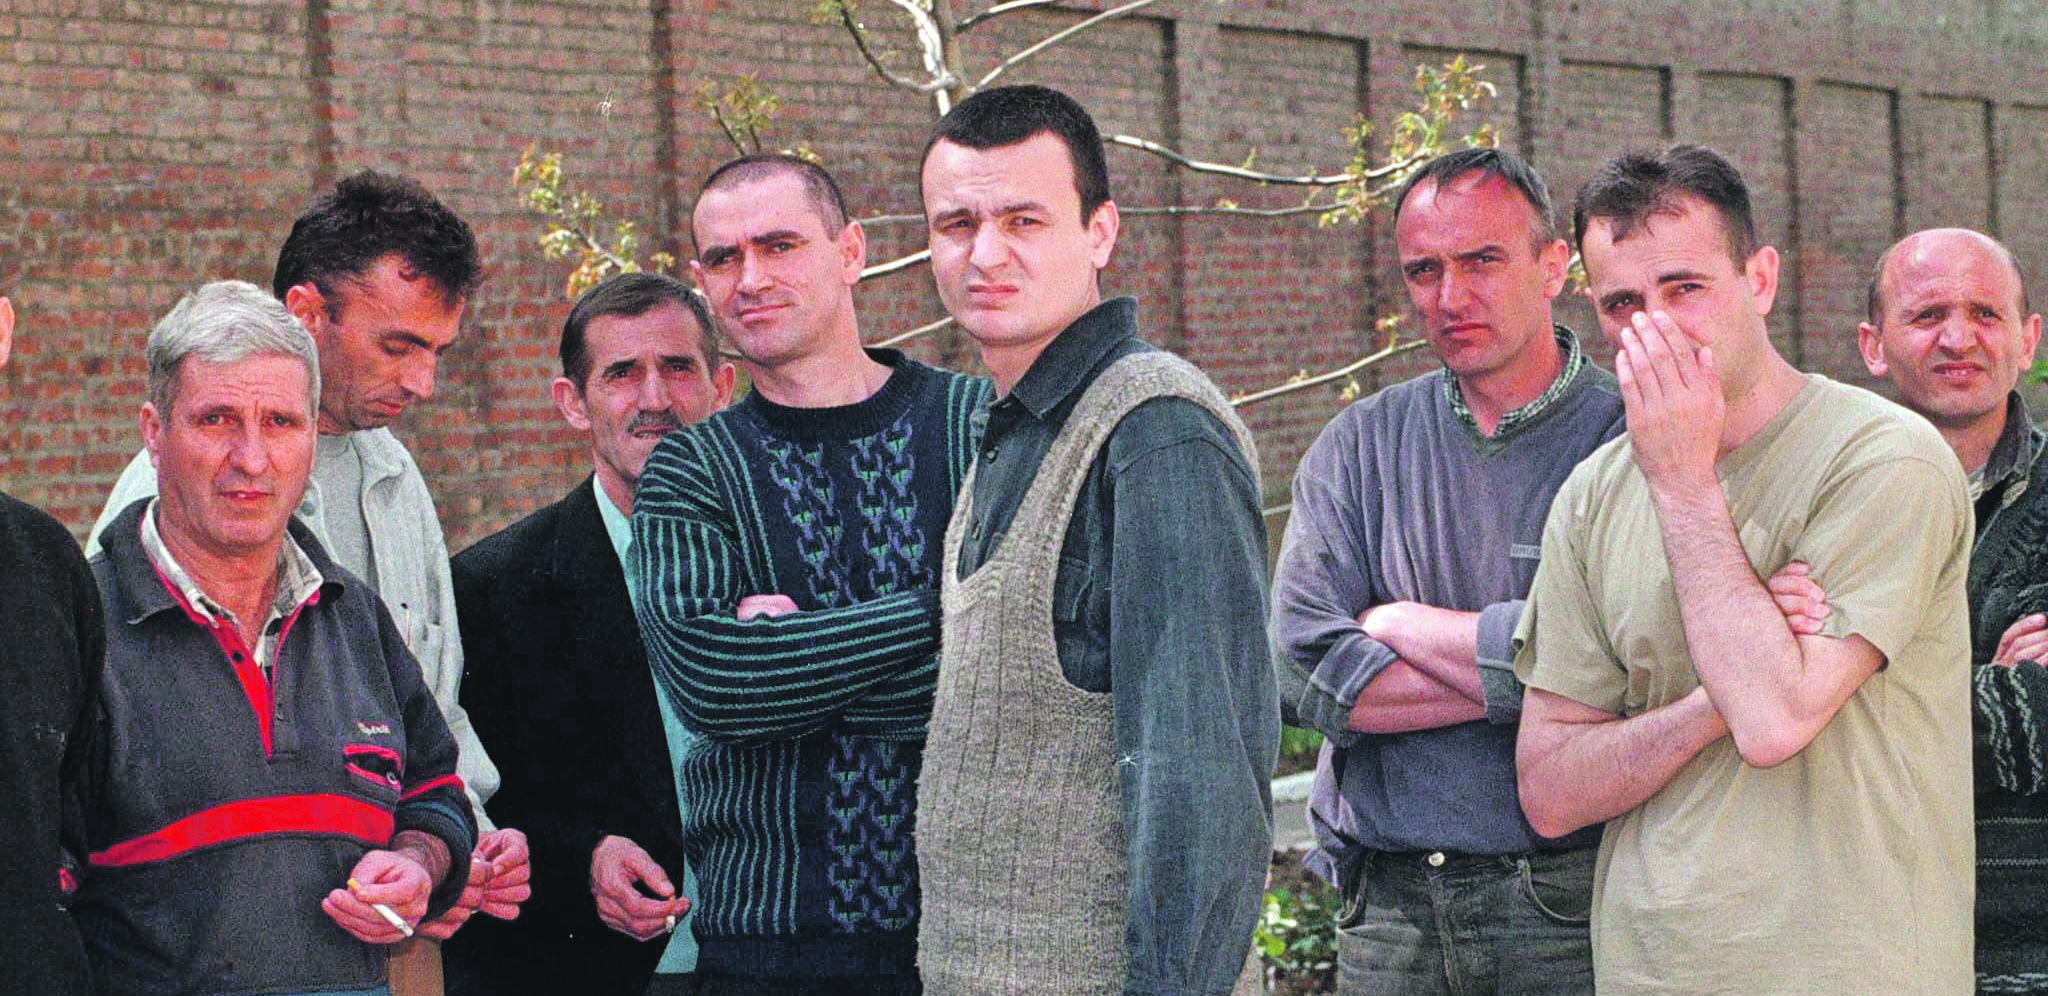 DESNIČARI U ZATVORU PAZILI KURTIJA KAO BELOG MEDVEDA Čovek koji je robijao s albanskim separatistima otkrio kako ih je tretirao Koštuničin režim pre oslobađanja